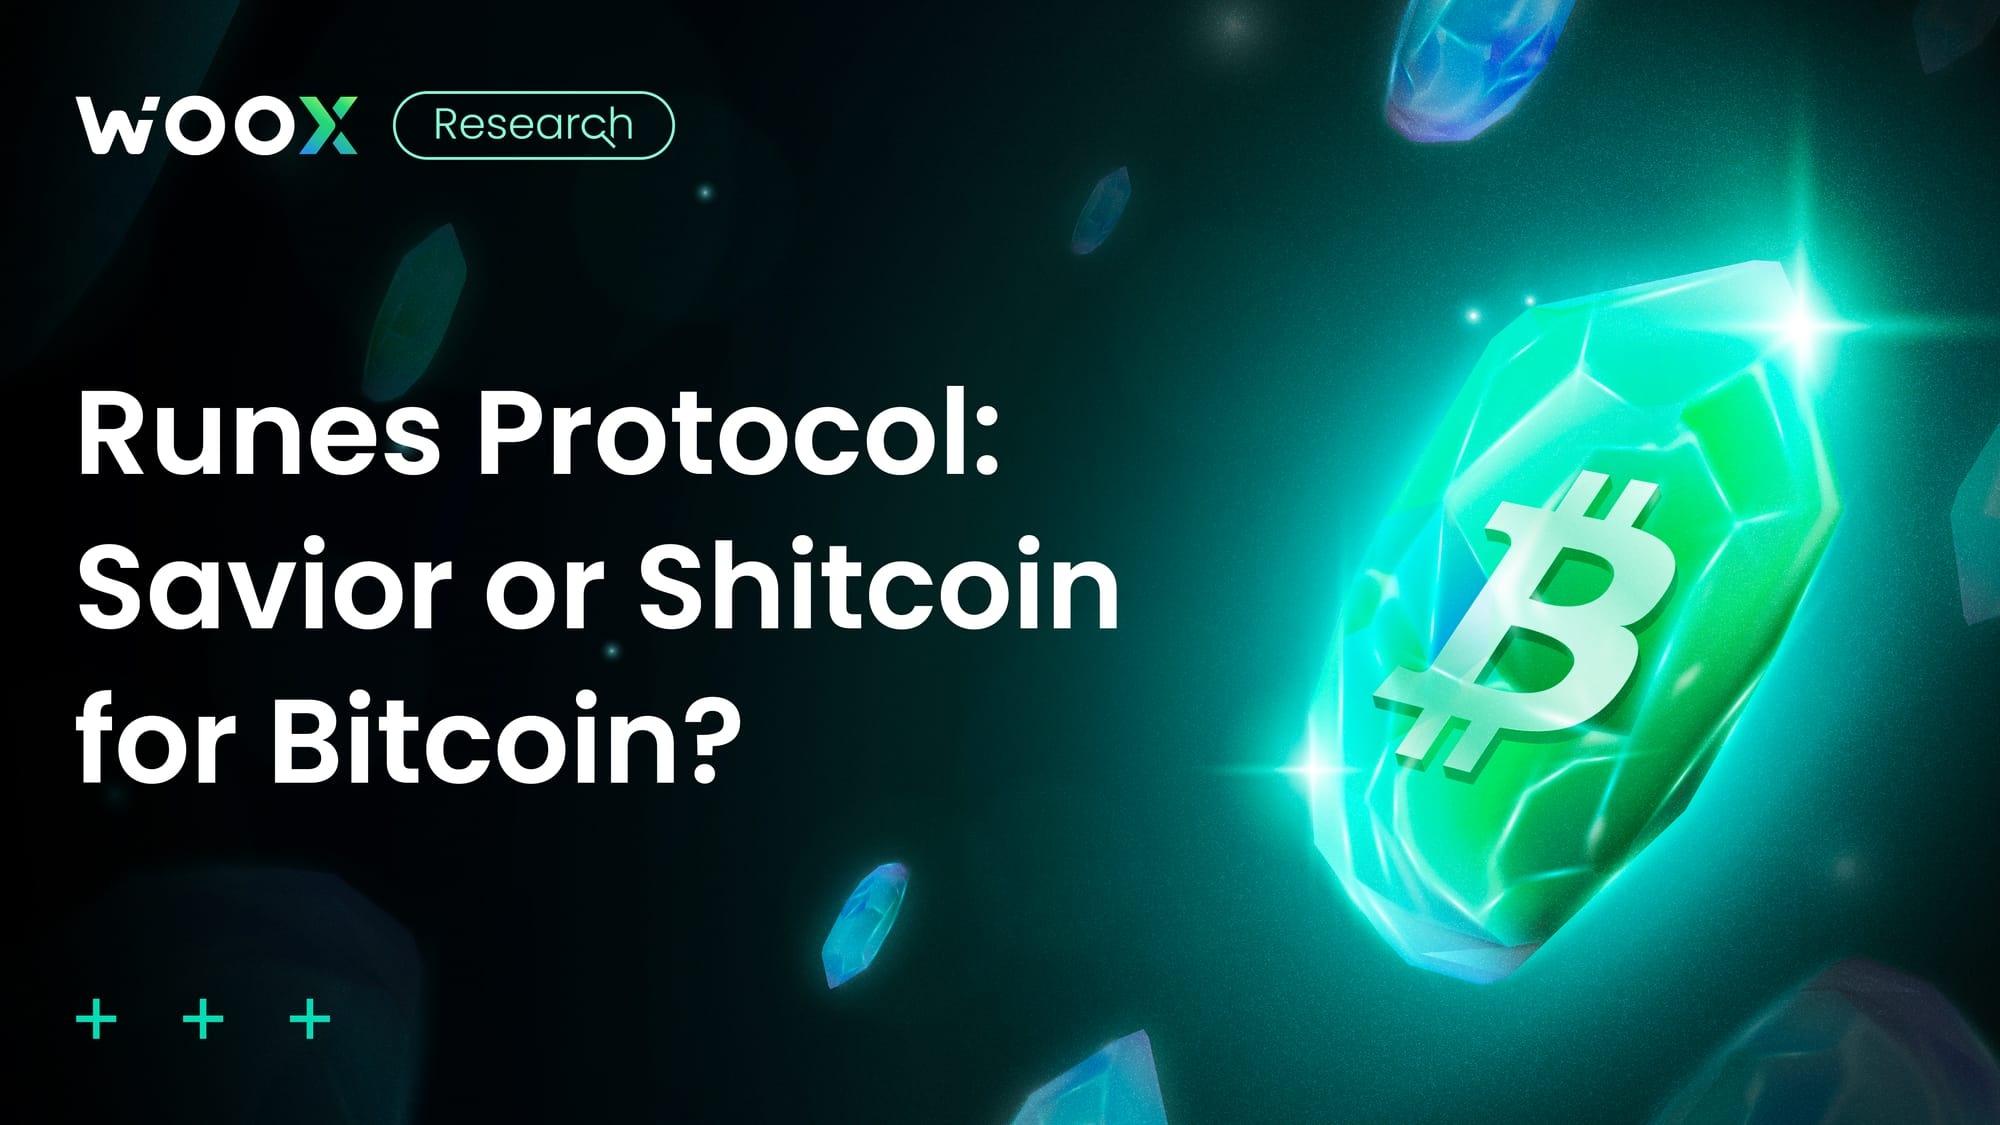 Runes Protocol: Savior or Shitcoin for Bitcoin?